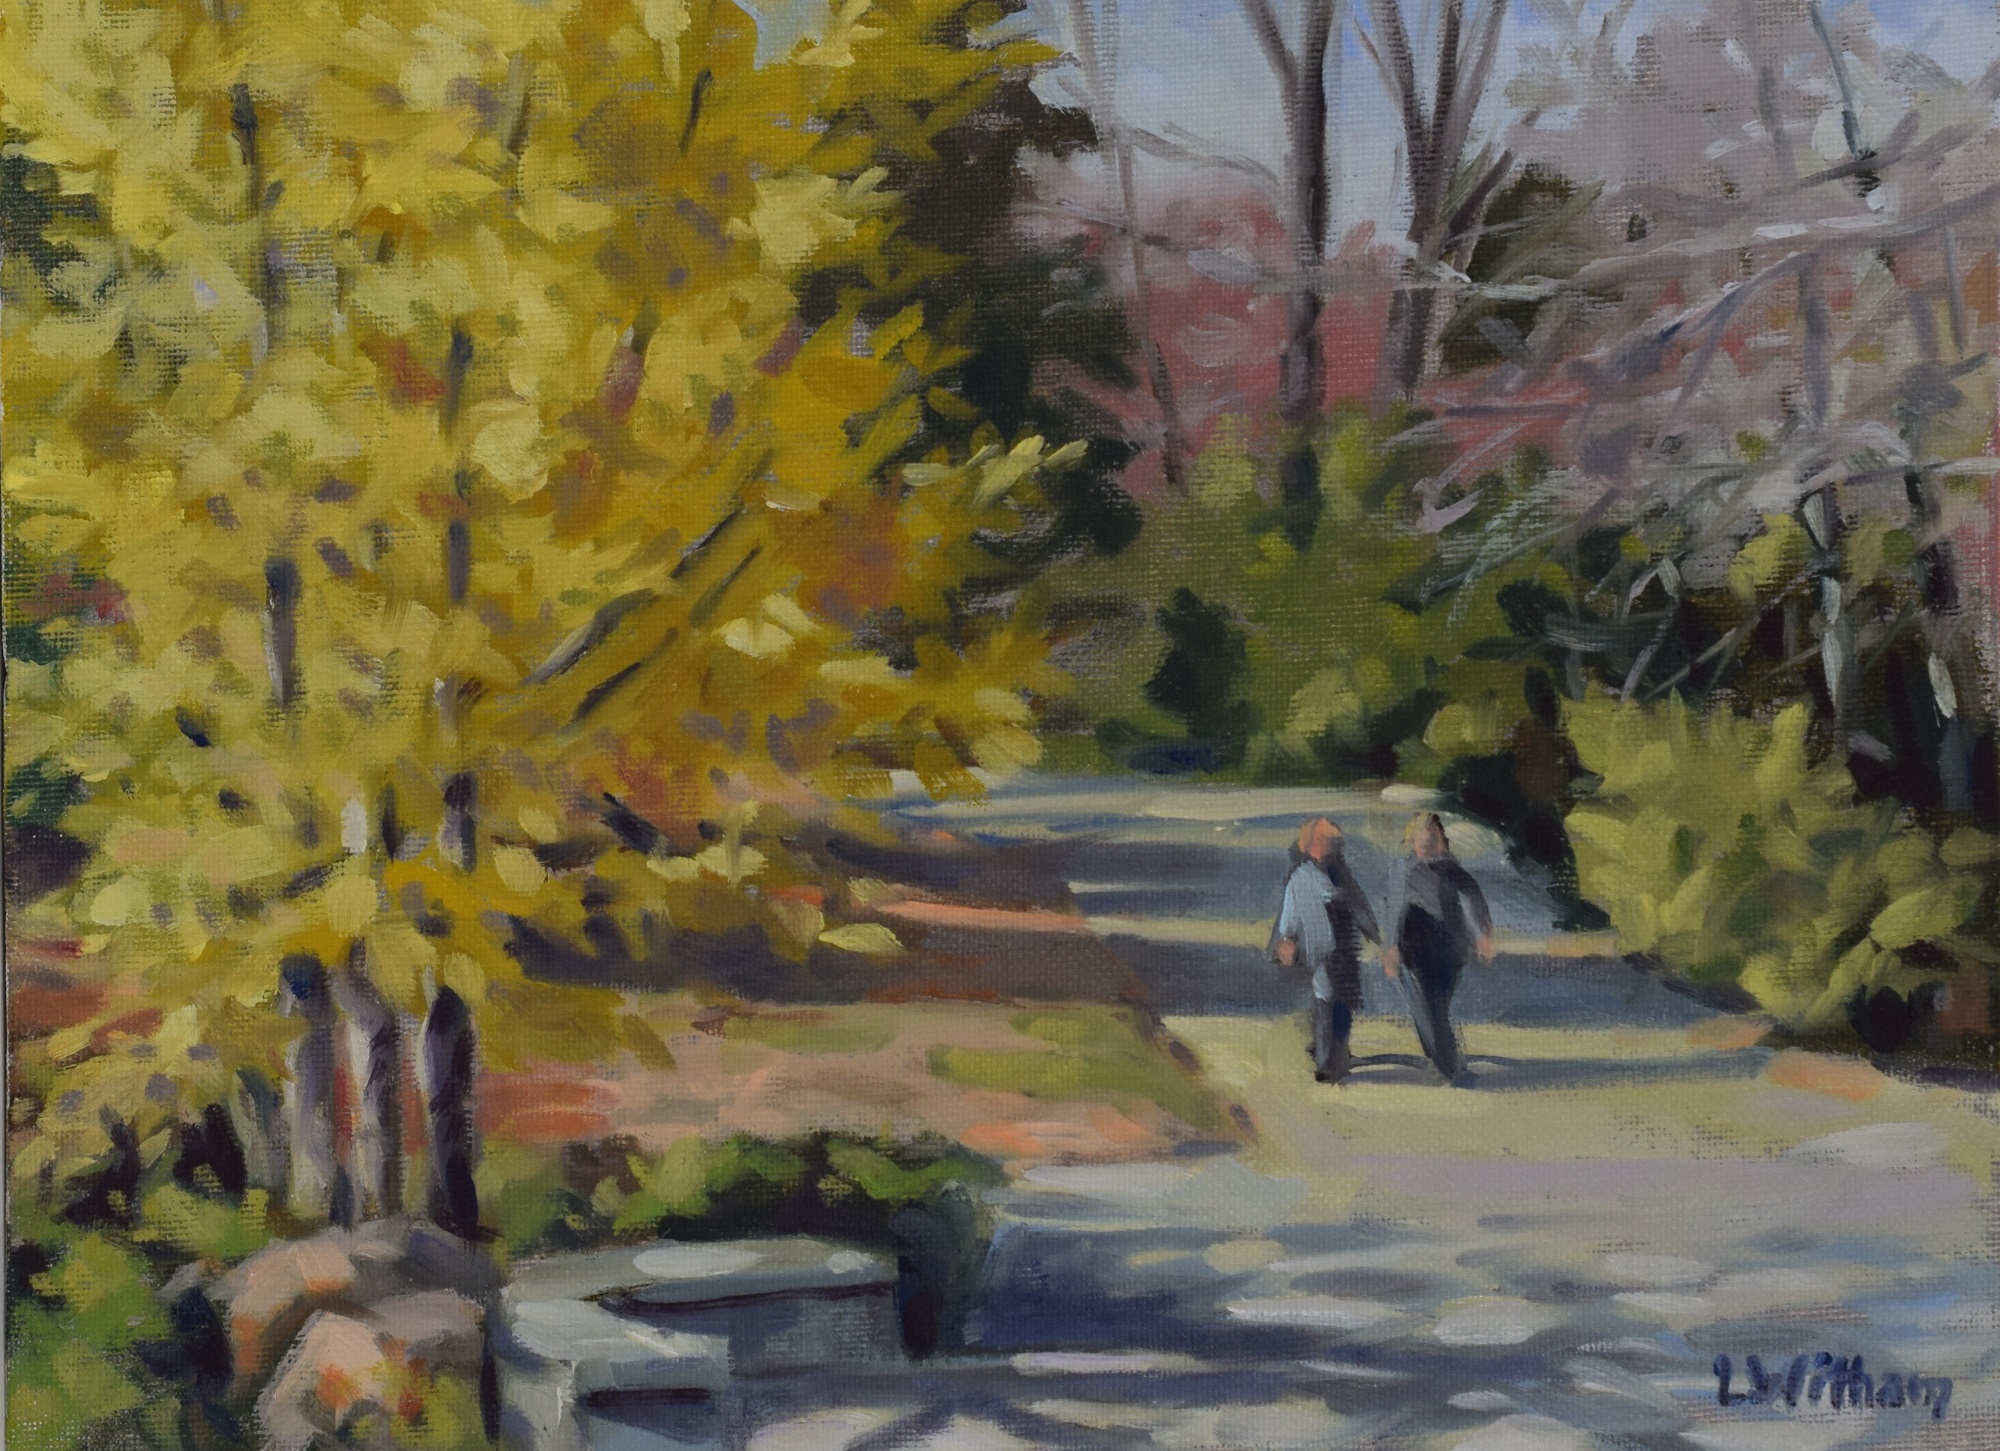 Arboretum Walk, Oil on canvas, 9x12